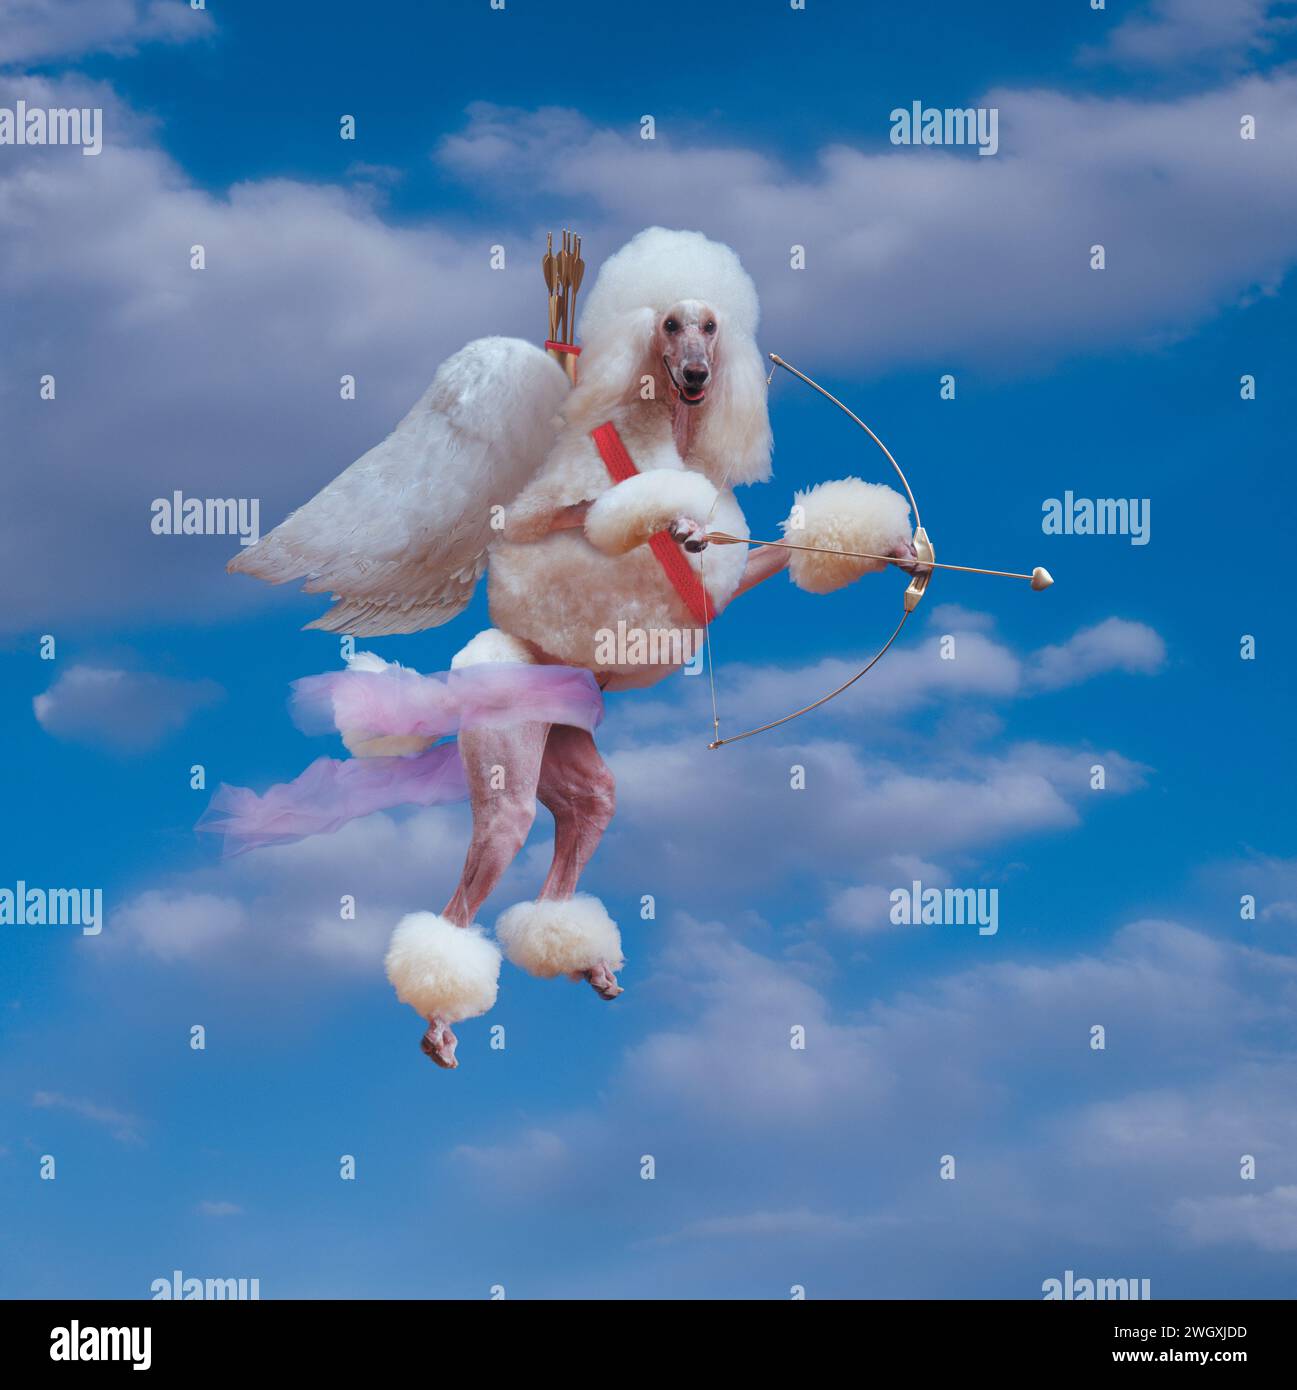 Un caniche ailé plane dans le ciel avec un arc et une flèche comme un Cupidon canin dans une photo humoristique de chien de la Saint-Valentin. Banque D'Images